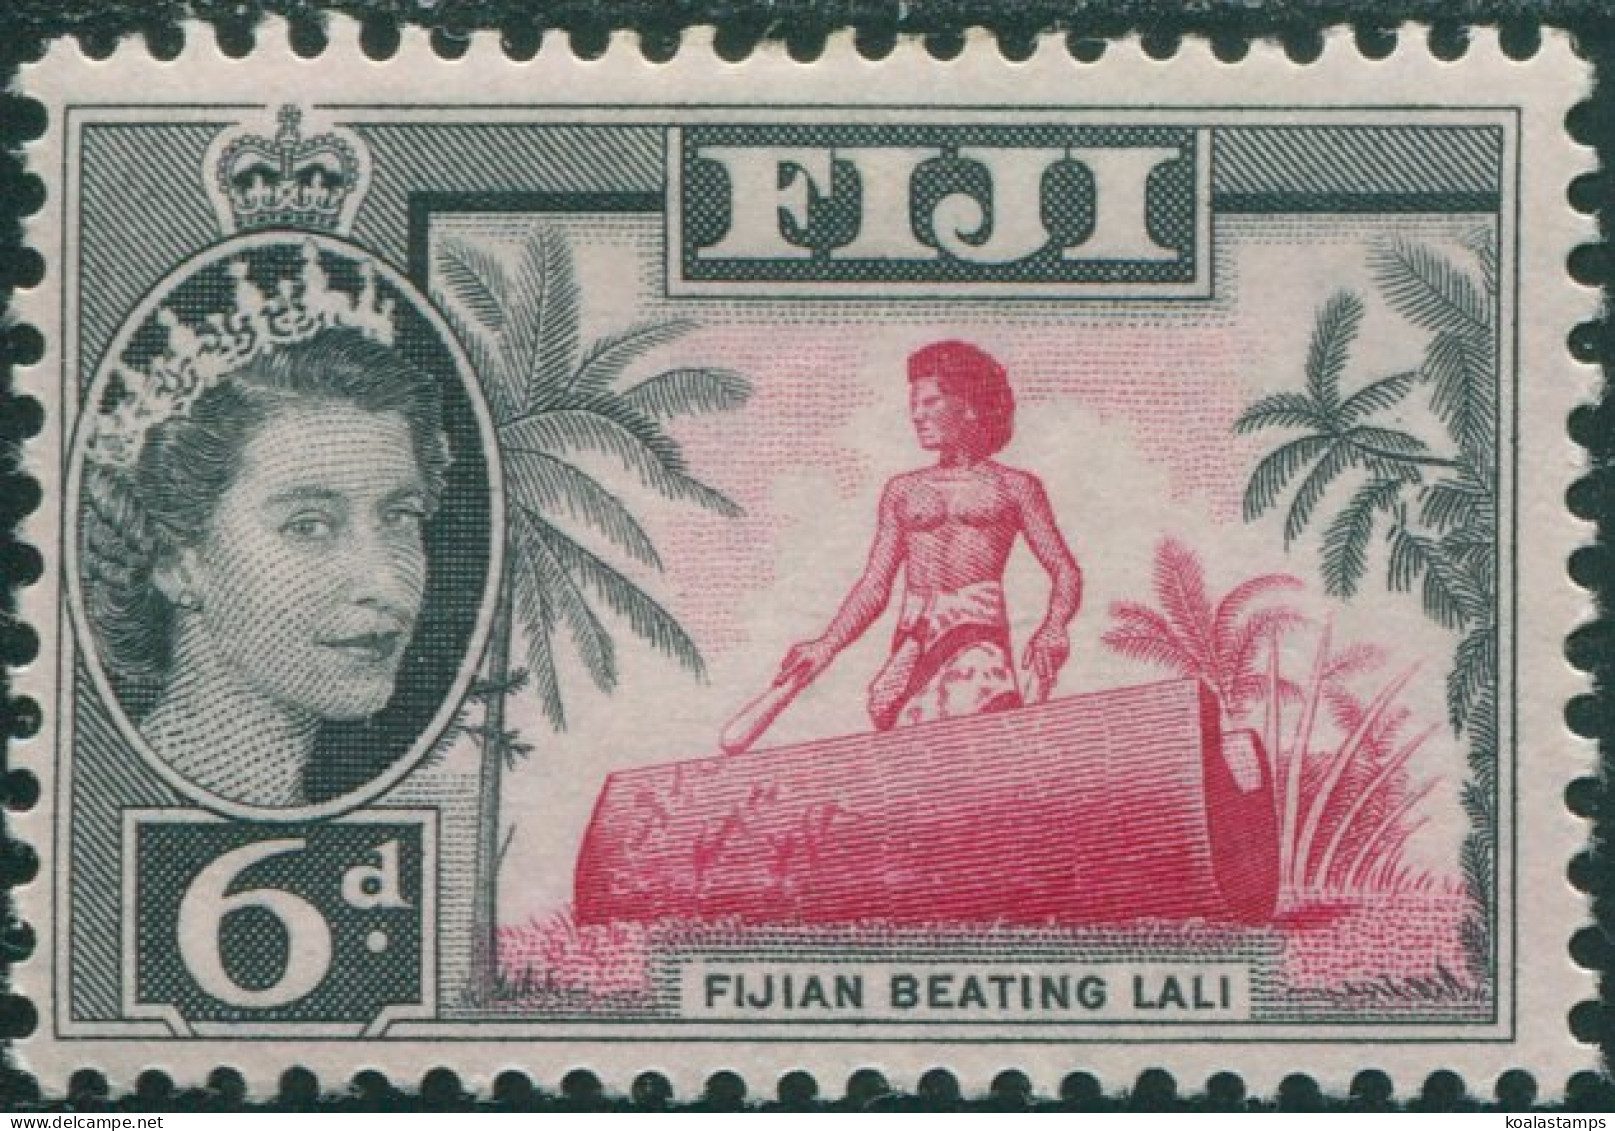 Fiji 1959 SG303 6d Carmine And Black Fijian Beating Lali QEII MNH - Fidji (1970-...)